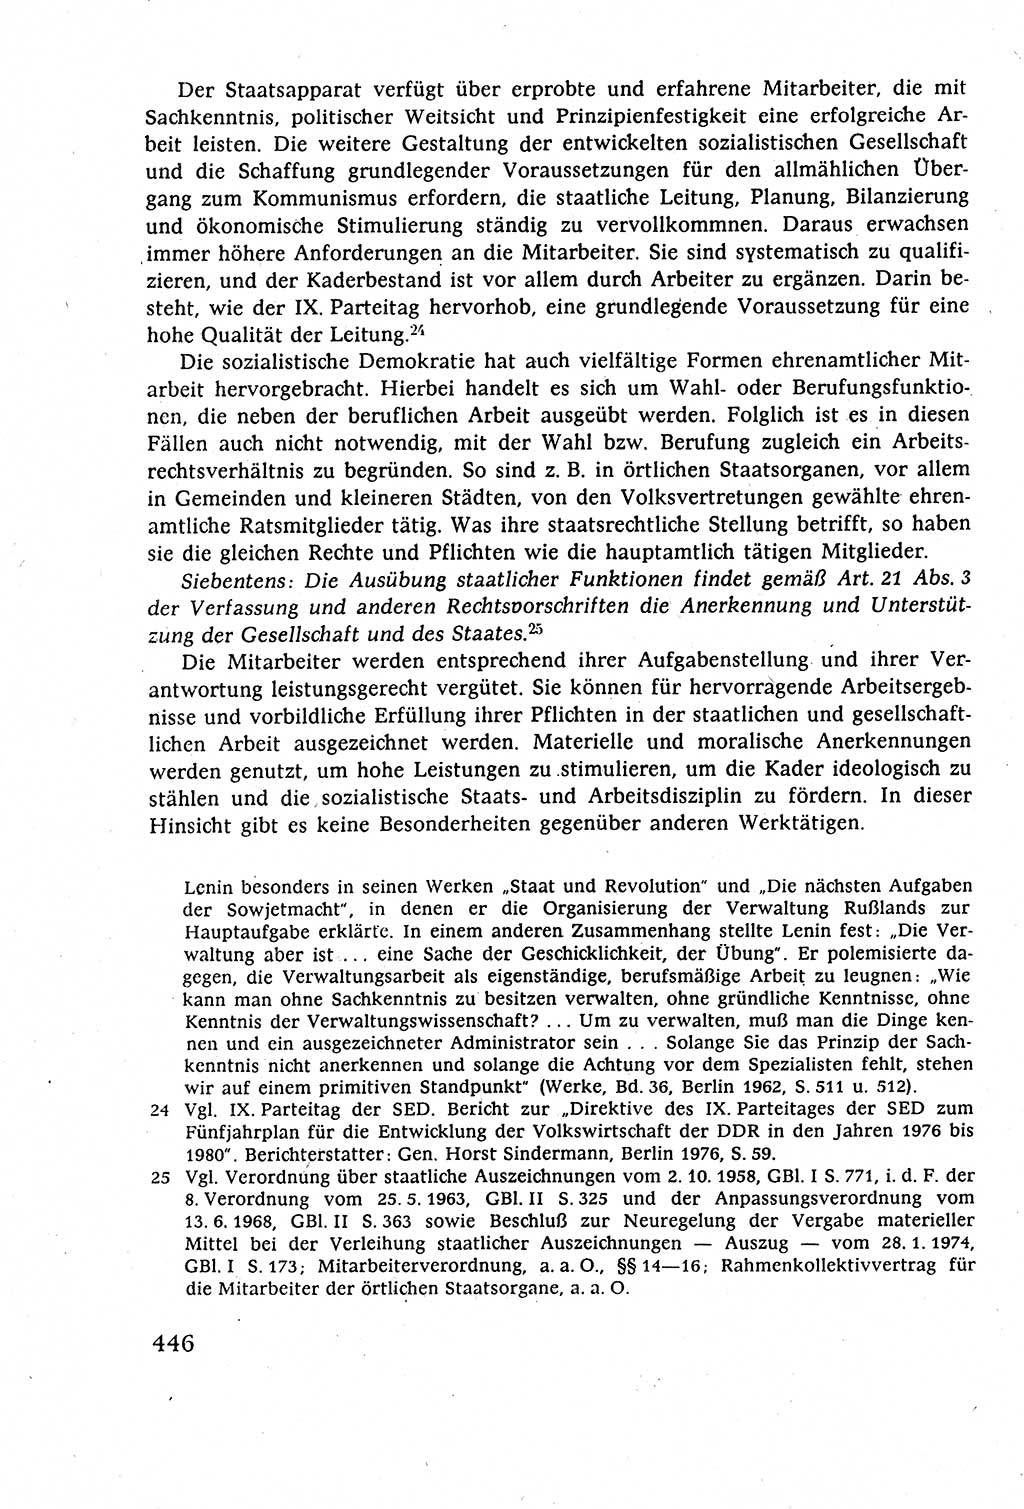 Staatsrecht der DDR (Deutsche Demokratische Republik), Lehrbuch 1977, Seite 446 (St.-R. DDR Lb. 1977, S. 446)